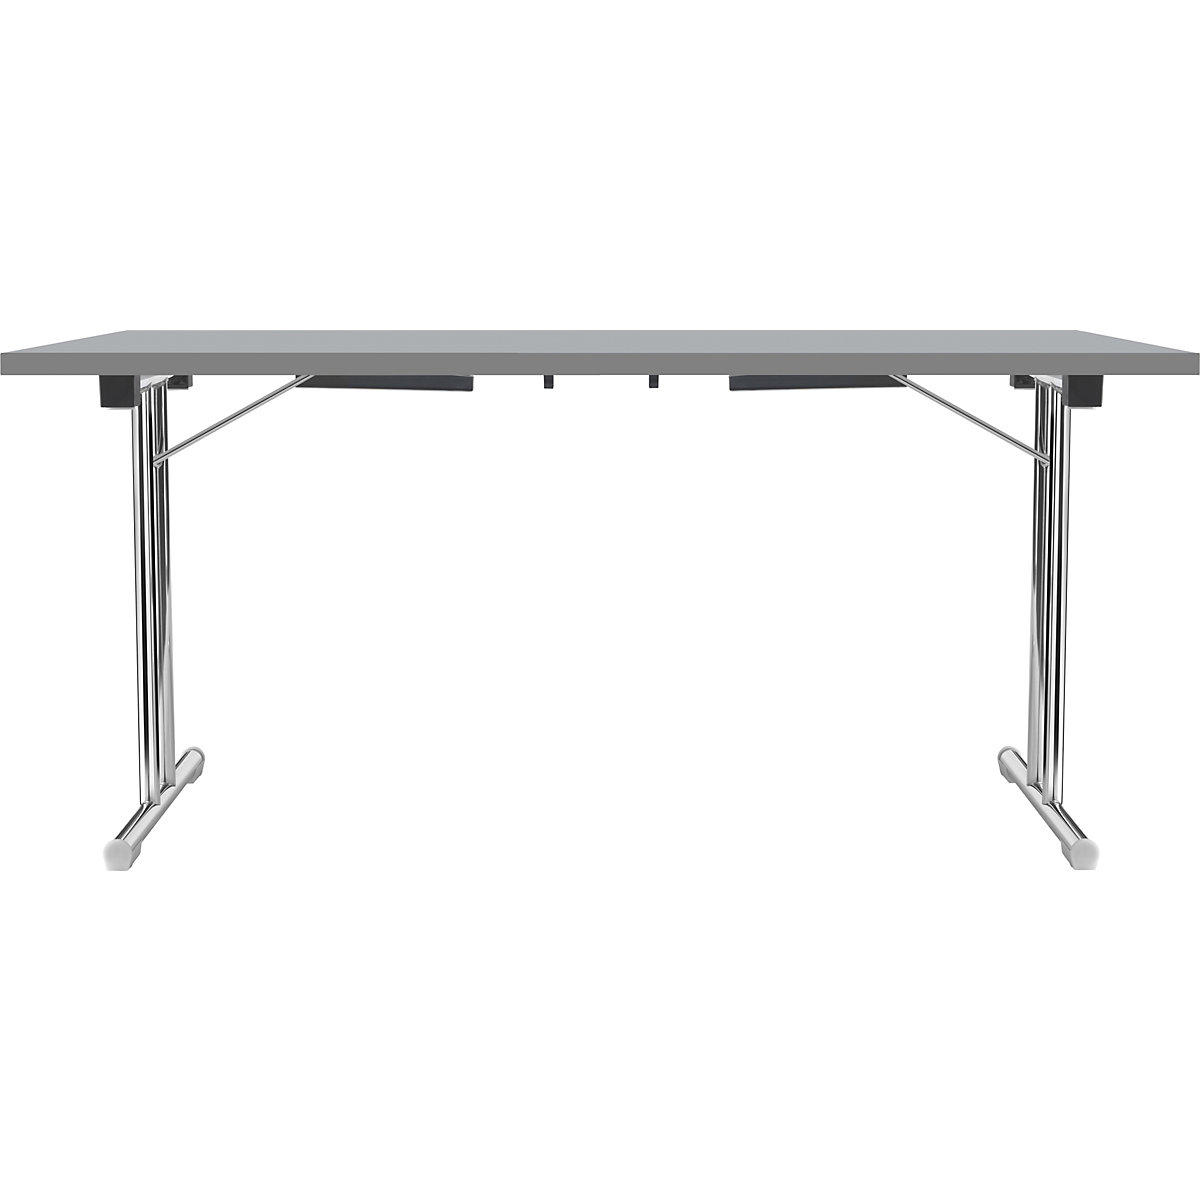 Tavolo pieghevole con basamento a T doppio, telaio in tubo tondo d'acciaio, cromato, grigio chiaro/antracite, largh. x prof. 1400 x 700 mm-18